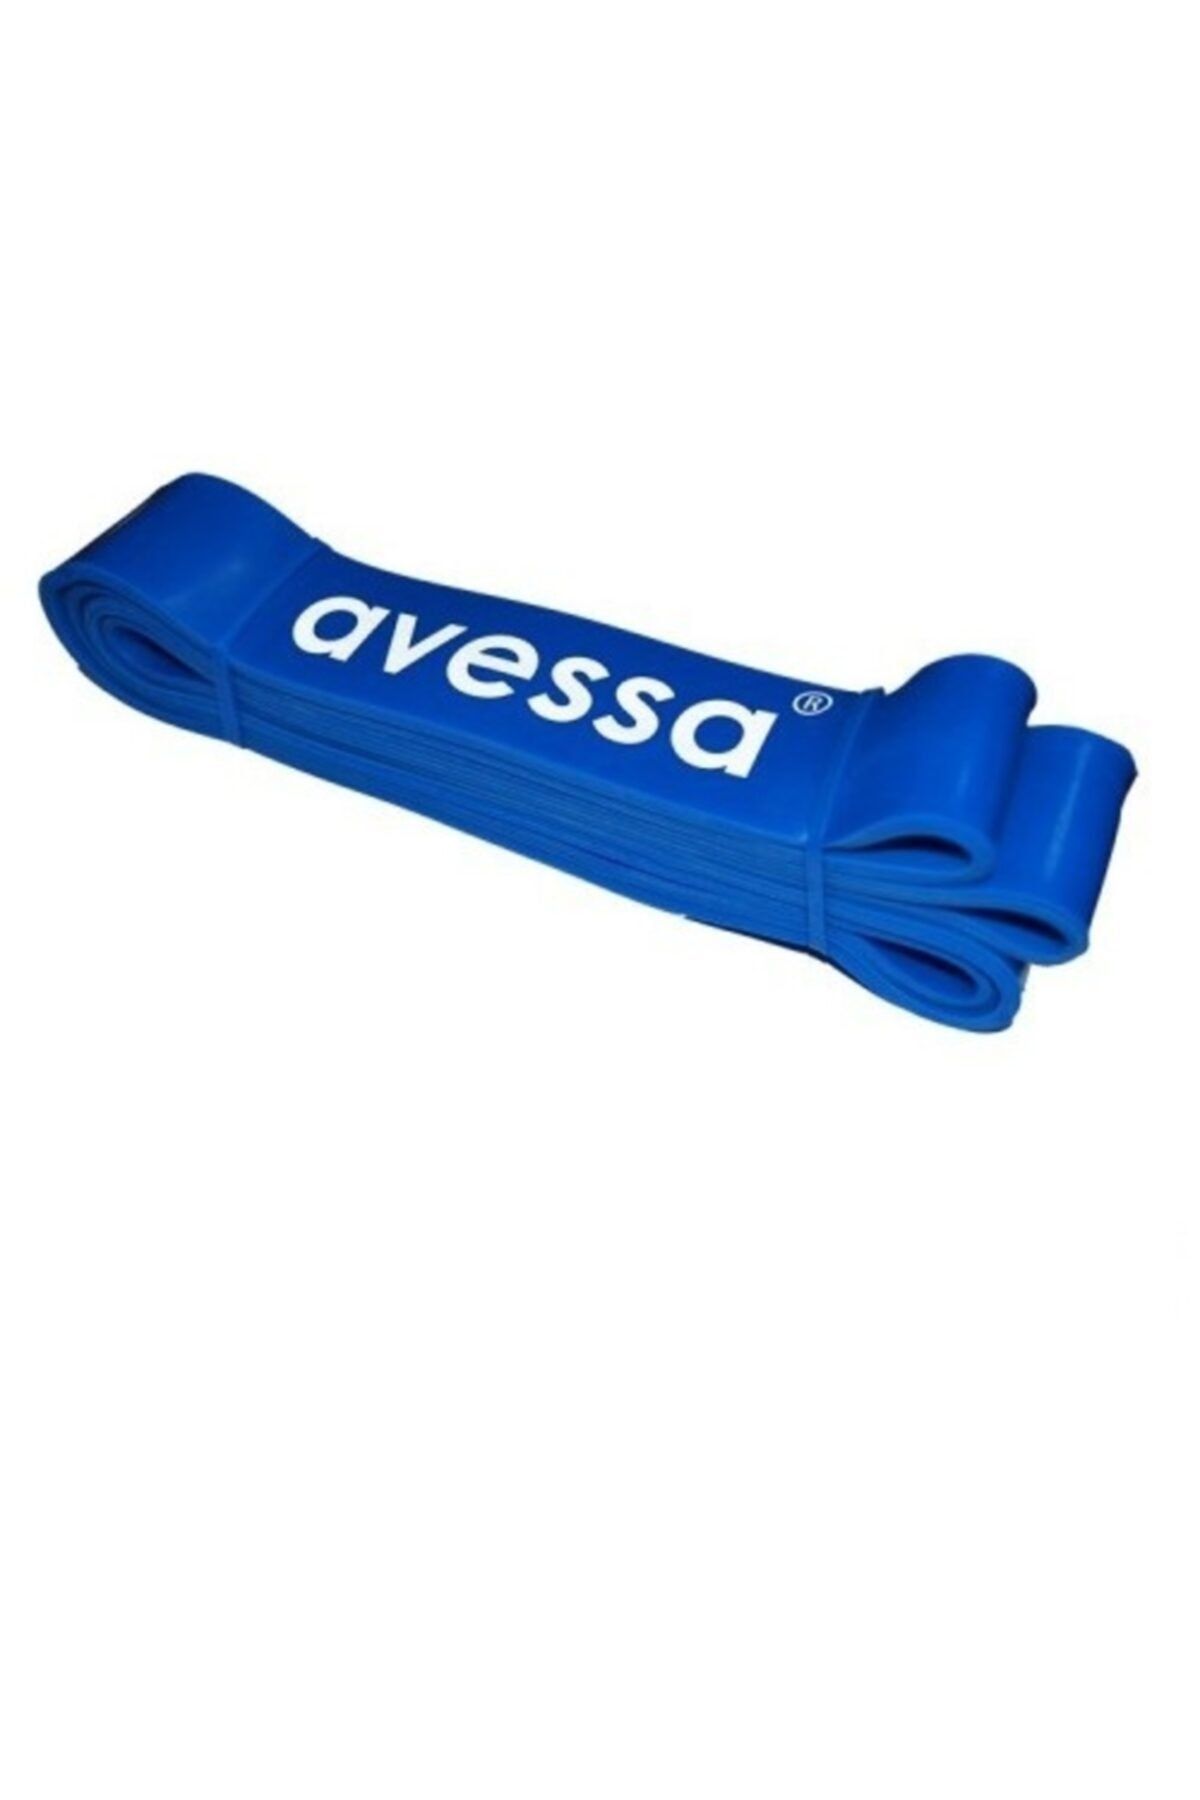 Avessa Lpb Güç Bandı Direnç Egzersiz Lastiği 45 mm